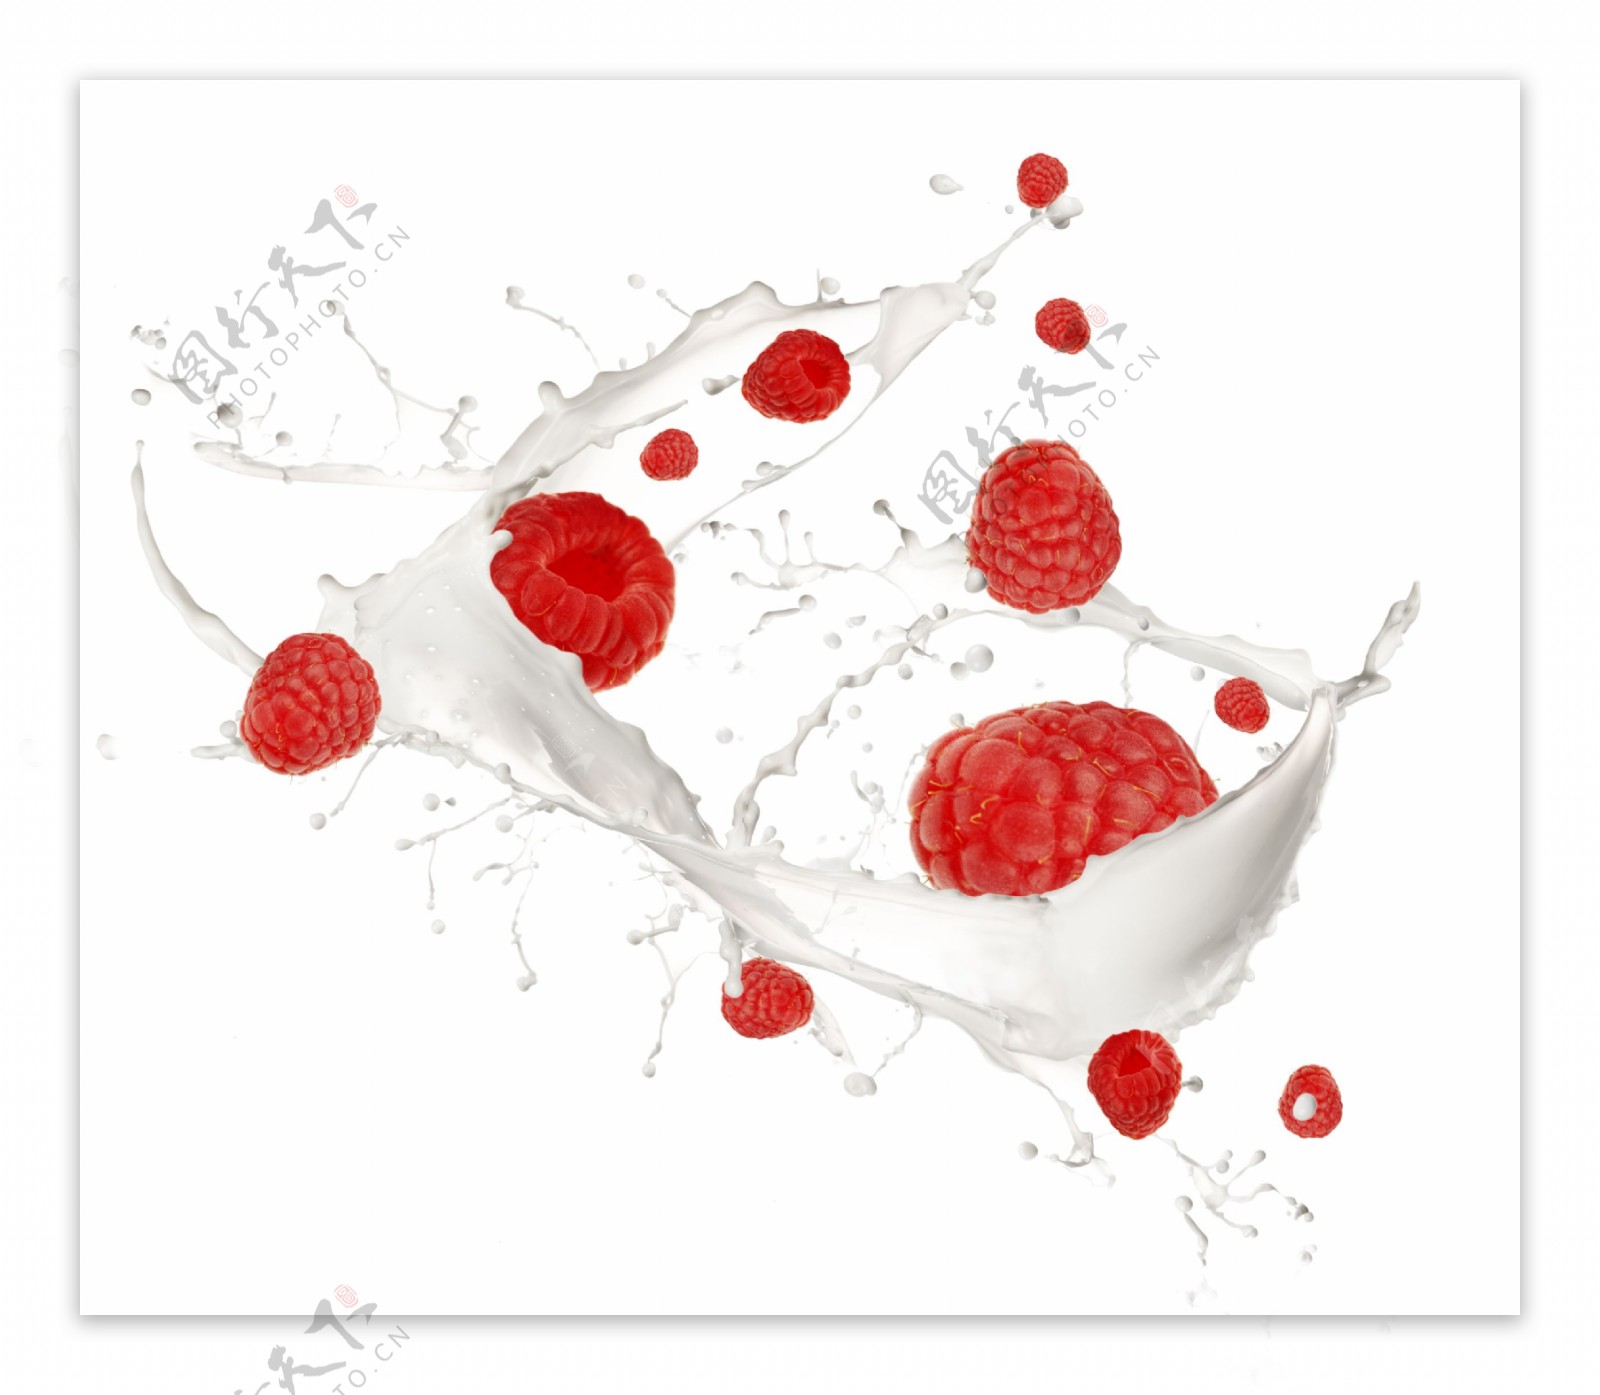 溅起水花的树莓高清图片素材